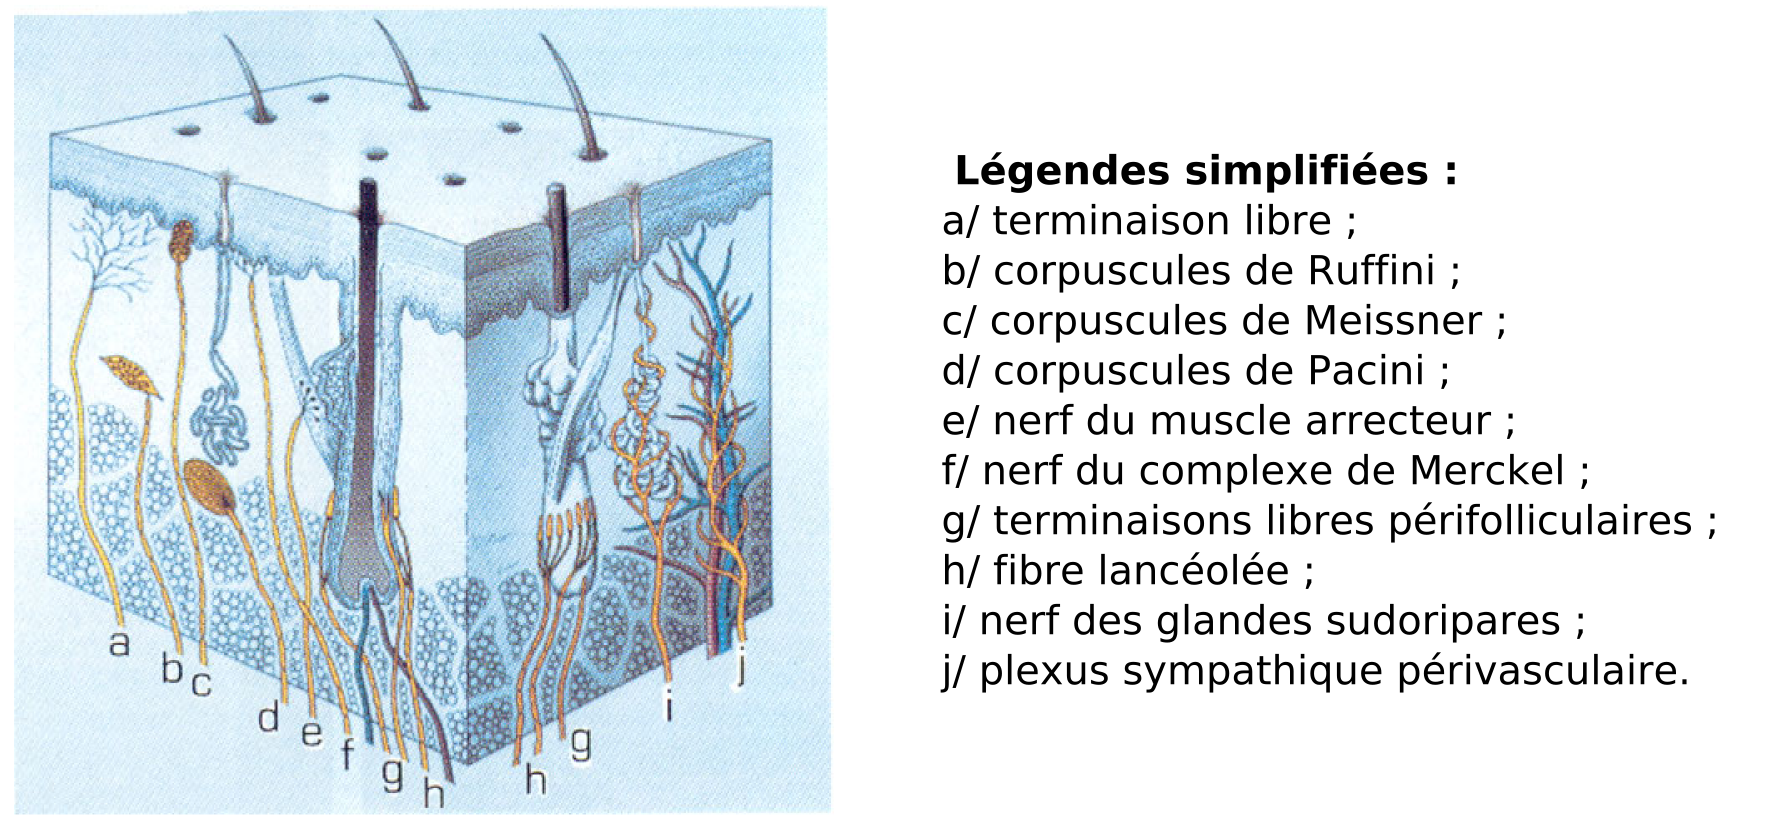  Structure de la peau (emprunté à (Reznik, 1996))